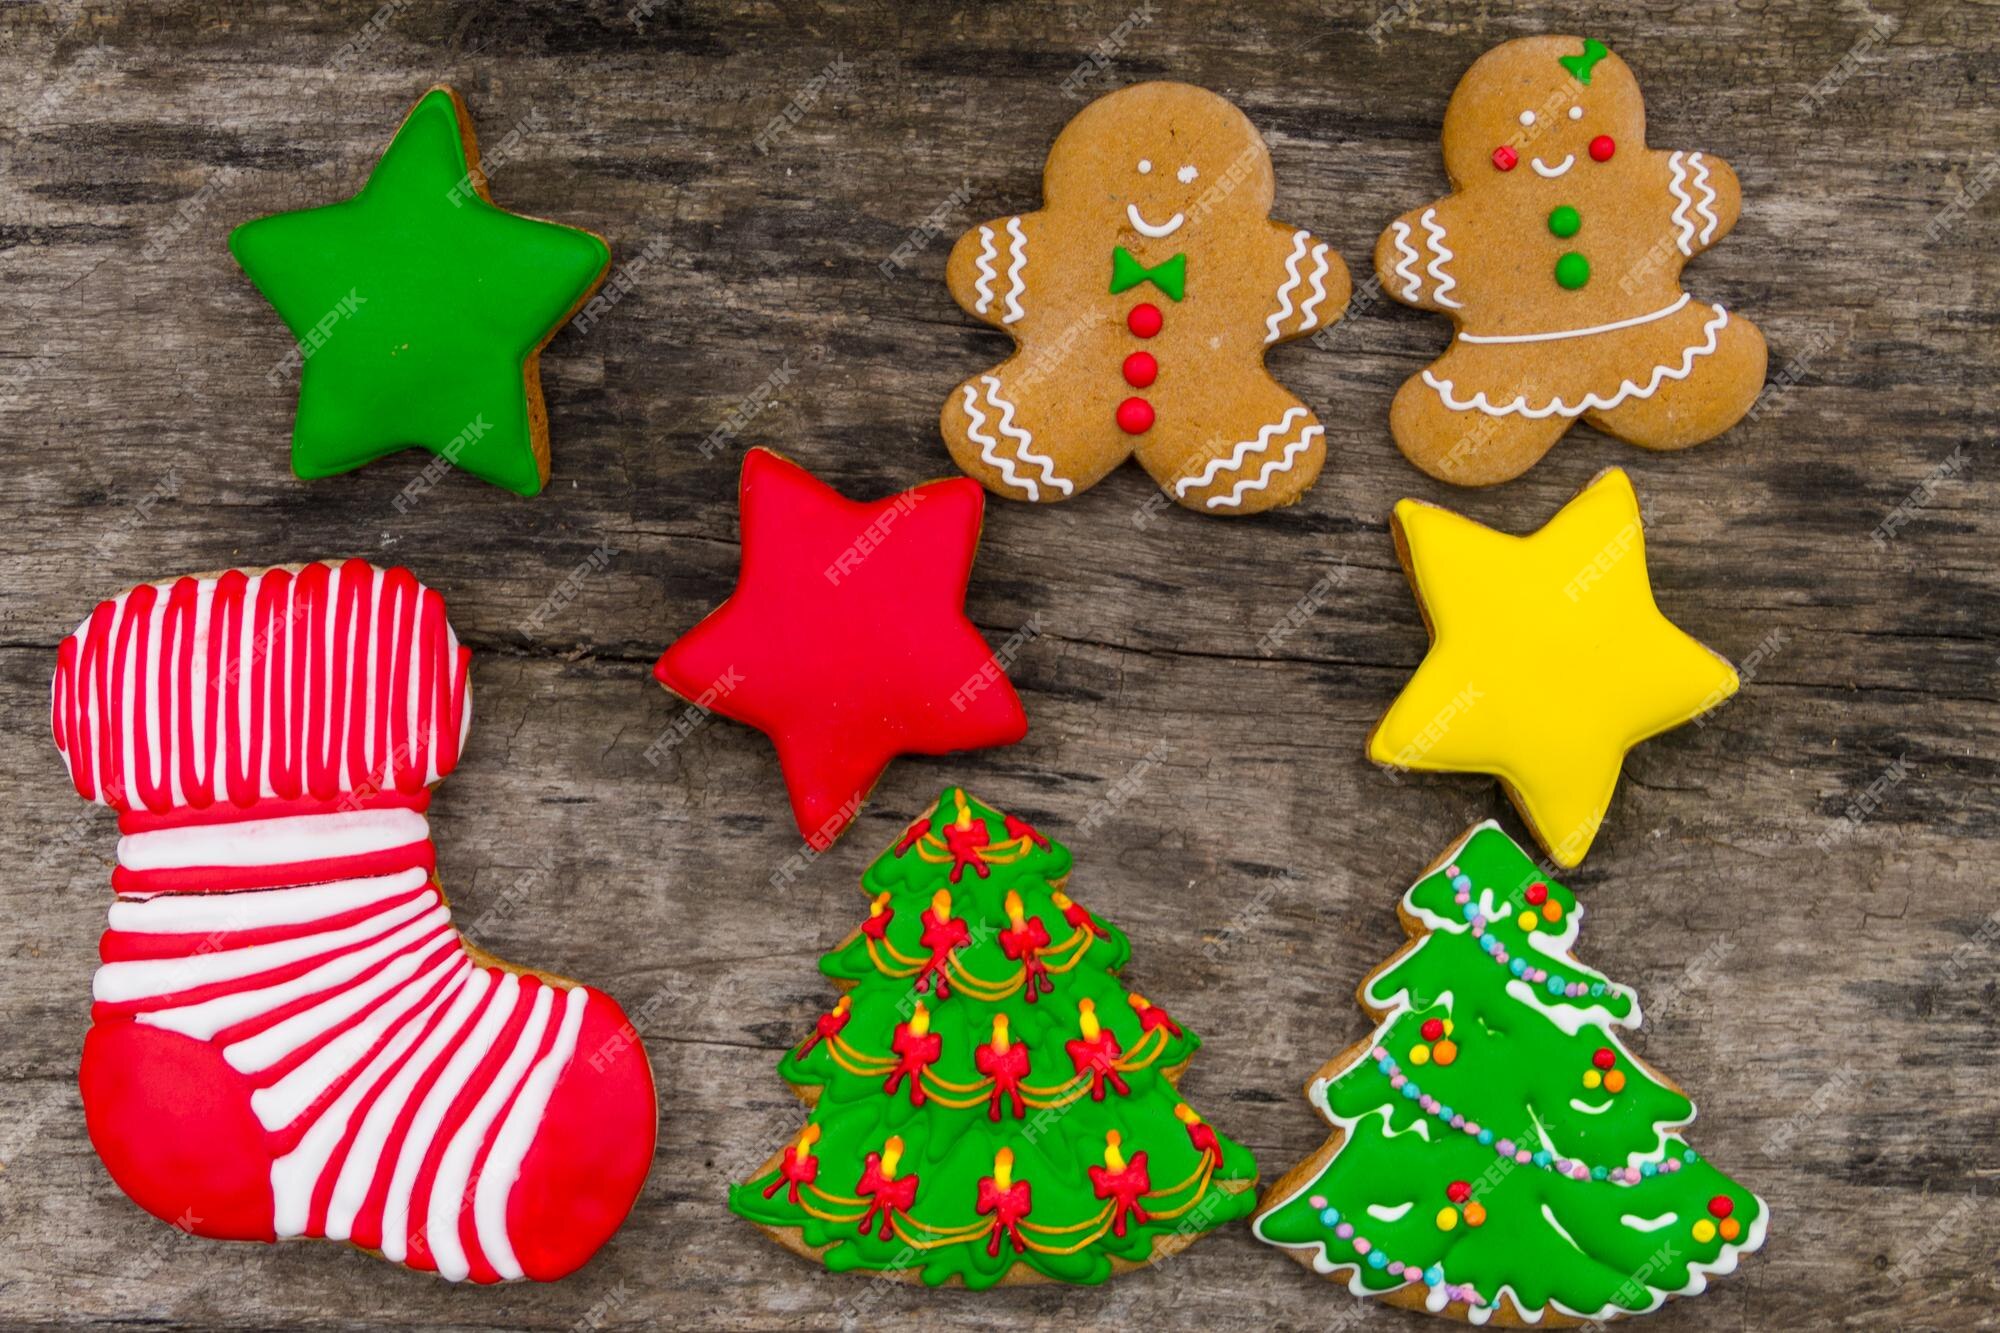 Saborosos biscoitos de natal festivos em forma de árvore de natal, homem- biscoito, estrela e meia de natal na mesa de madeira rústica. vista do topo  | Foto Premium